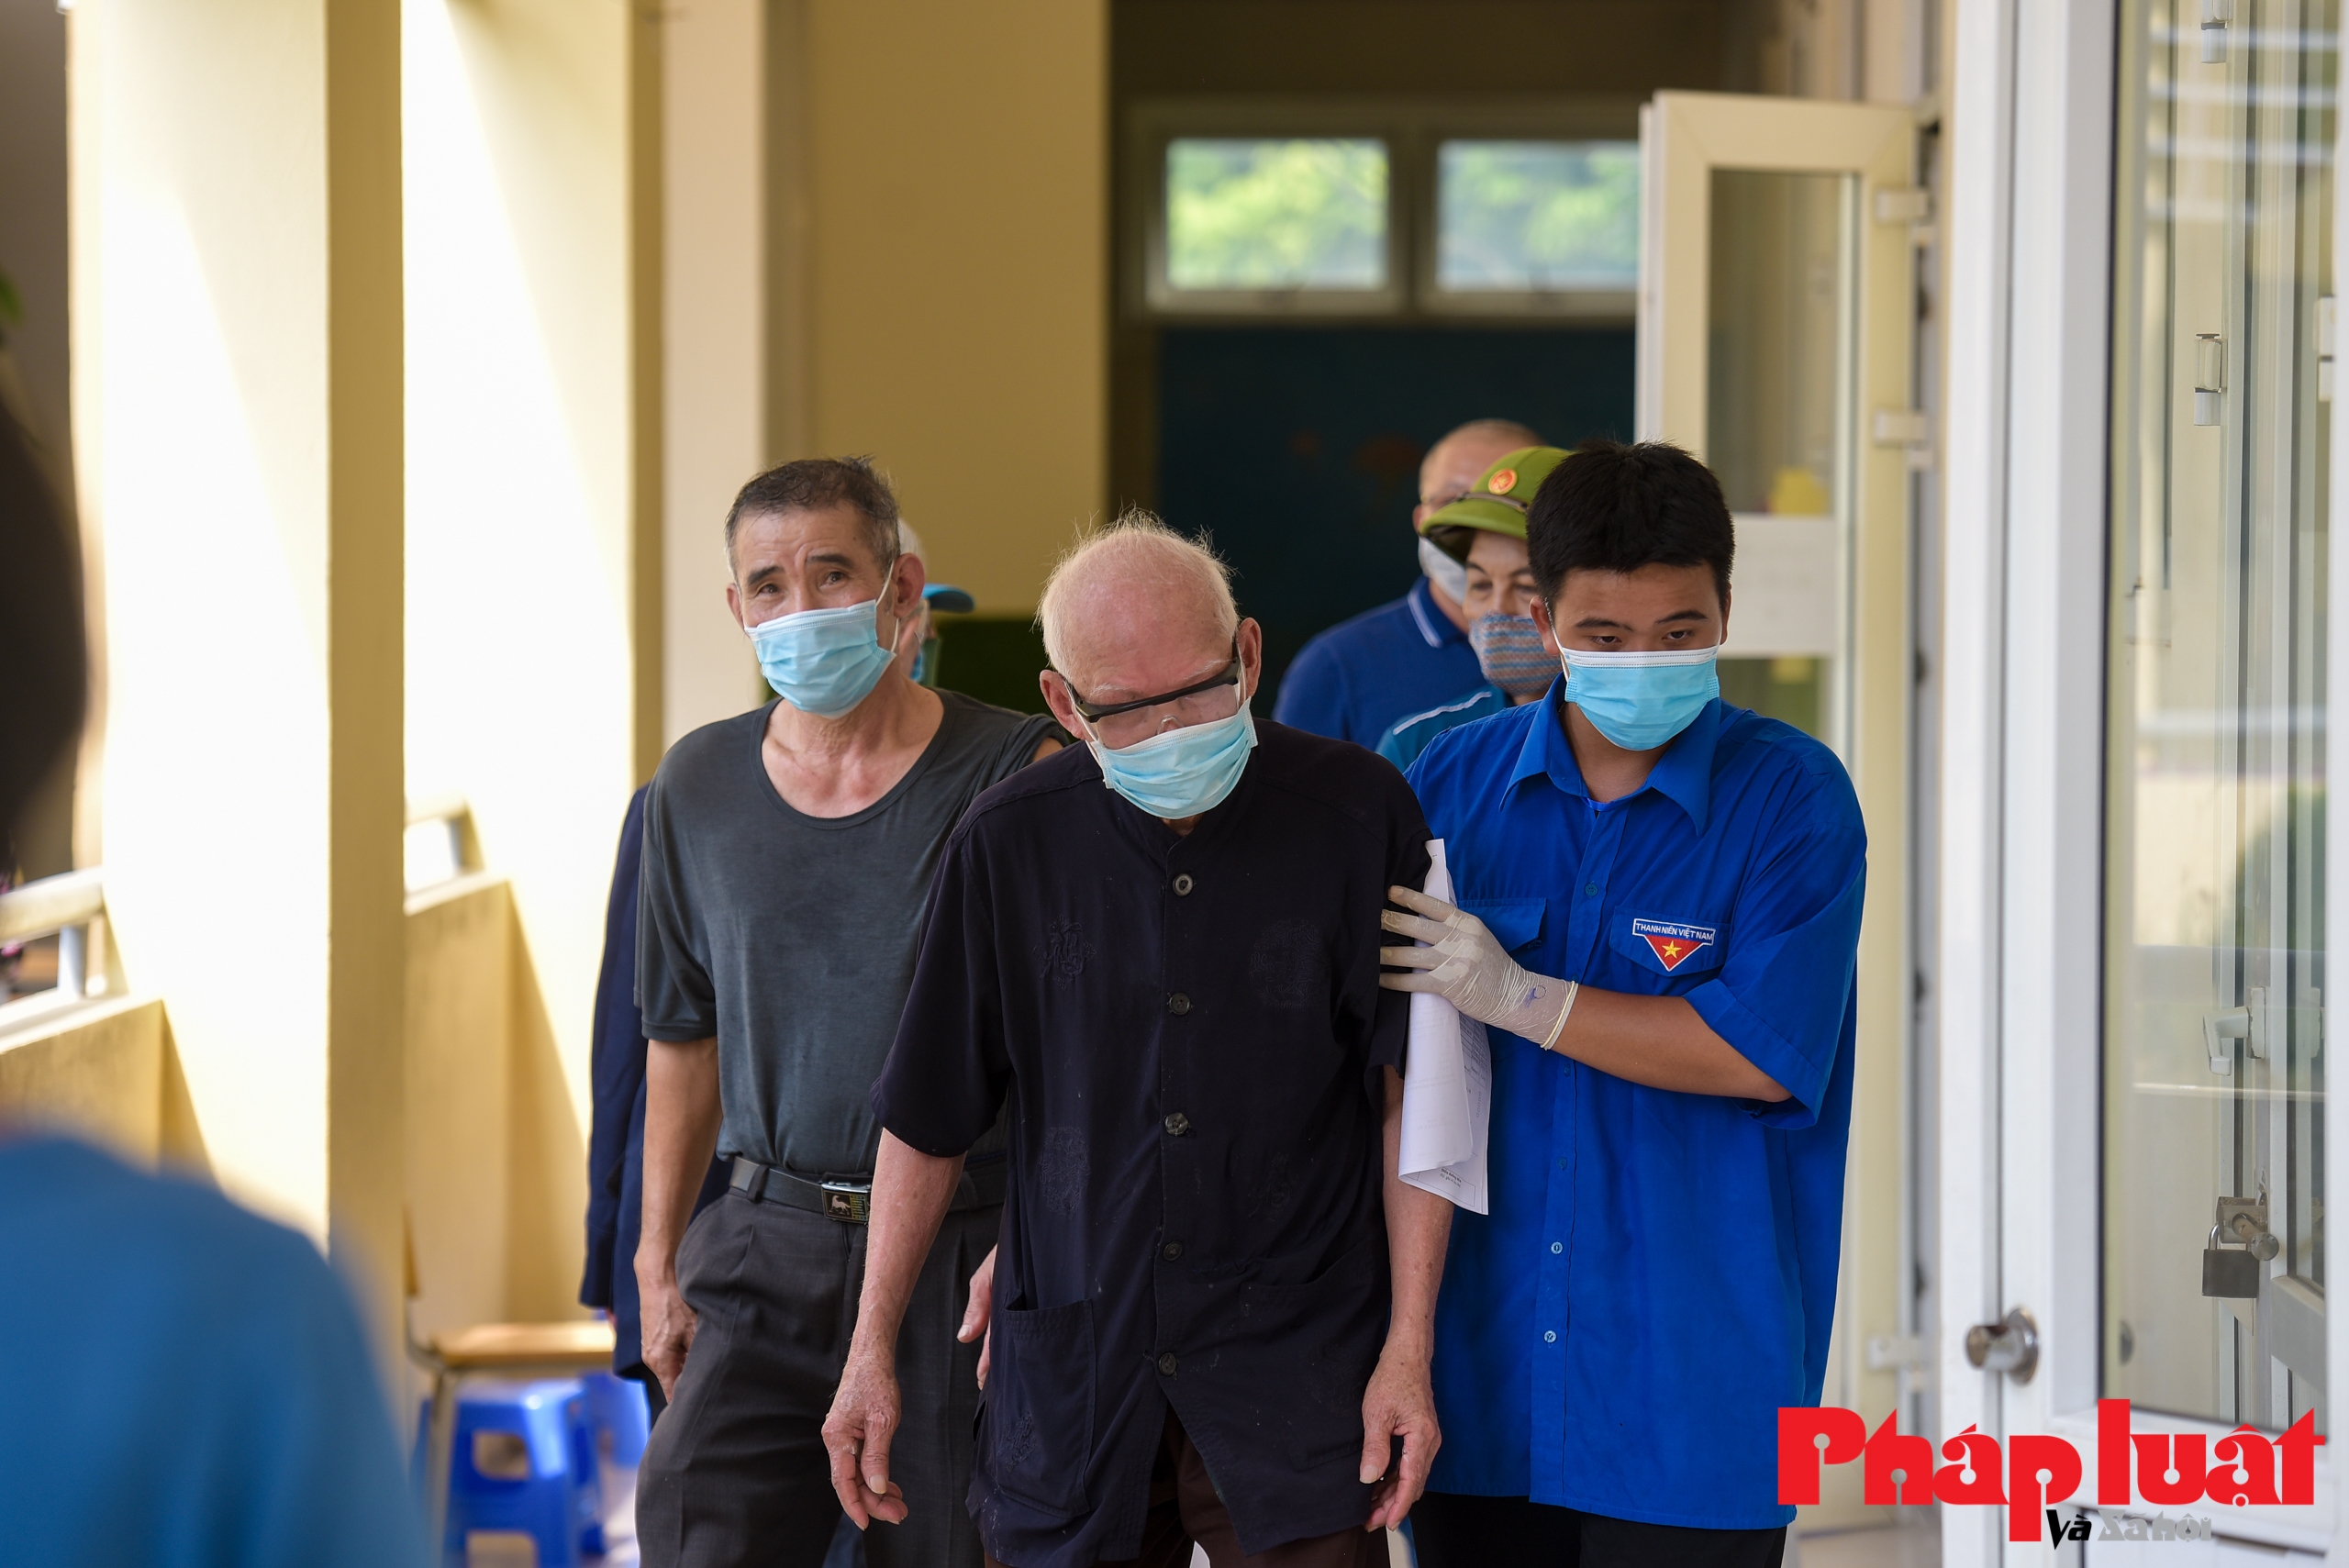 Đoàn y bác sĩ Bắc Giang hỗ trợ tiêm vắc-xin tại Hà Nội